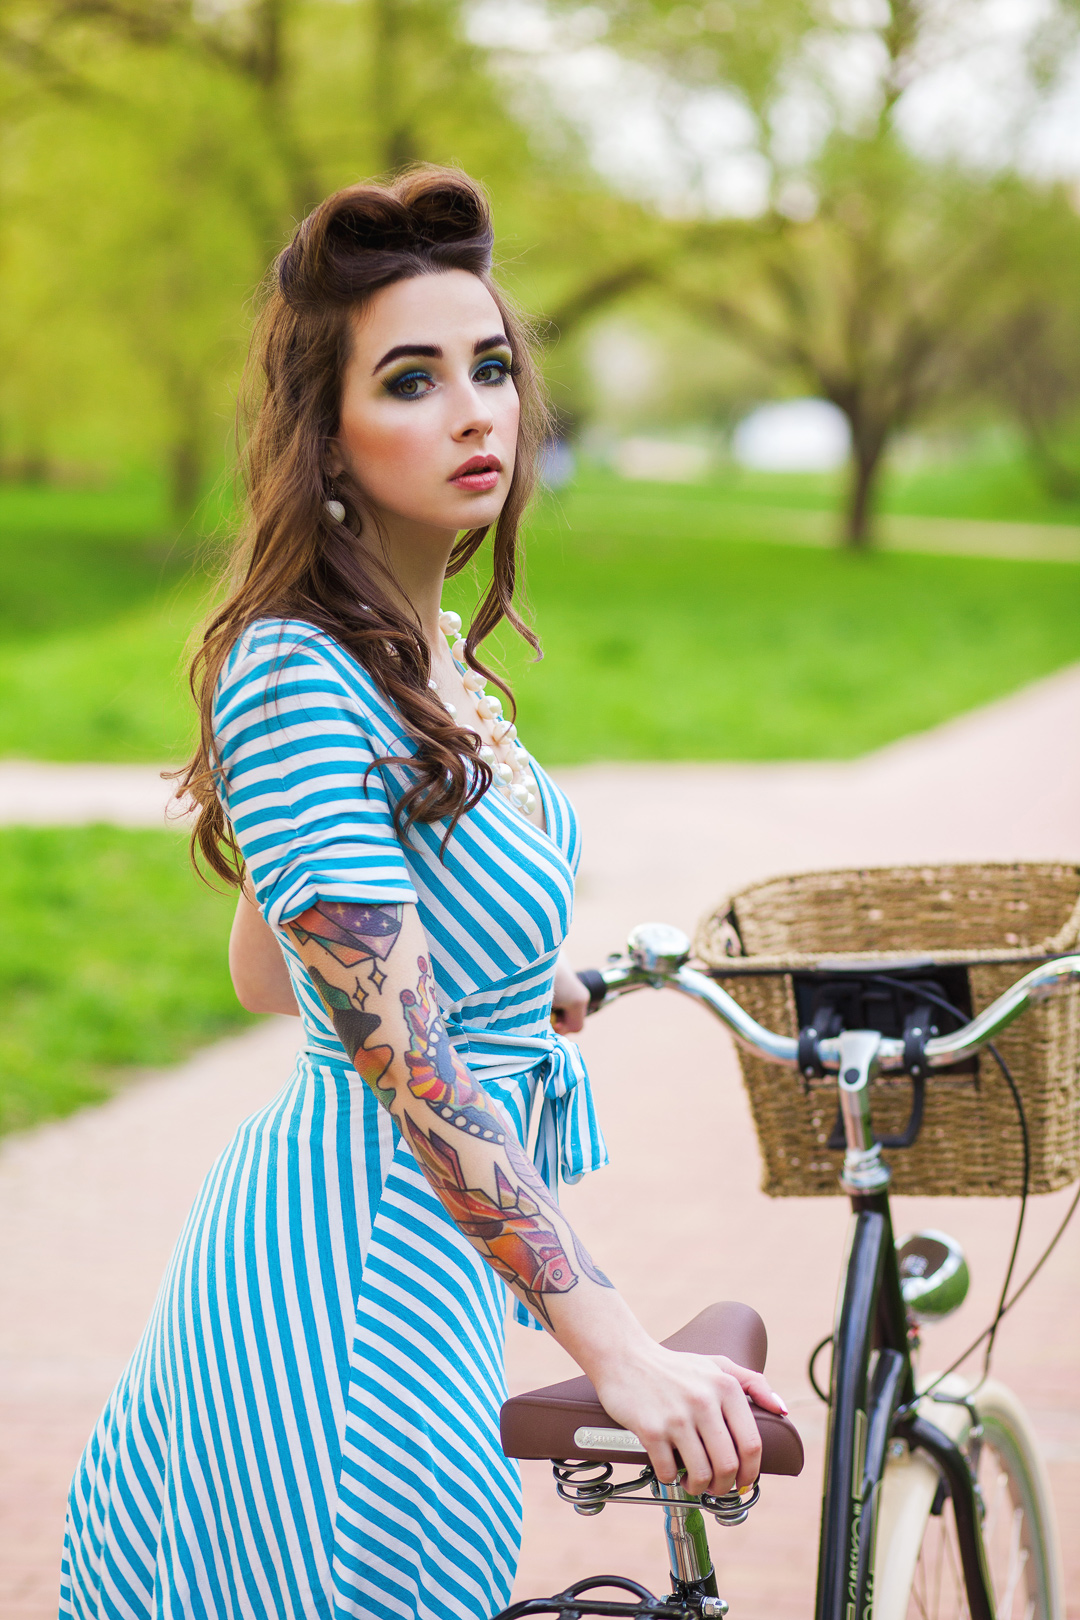 Татуированная модель Дарья Дамилола с велосипедом в парке